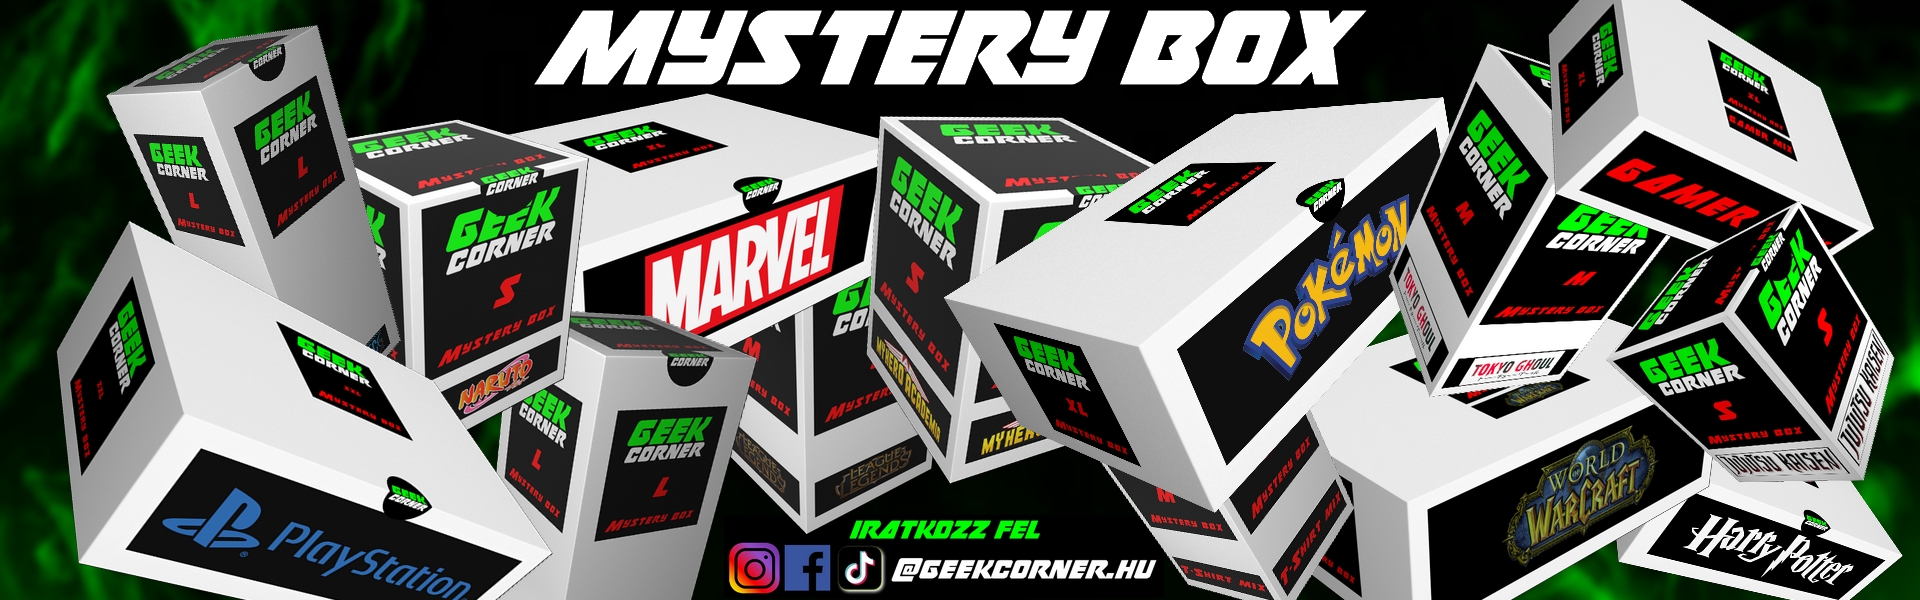 MYSTERY BOXOK